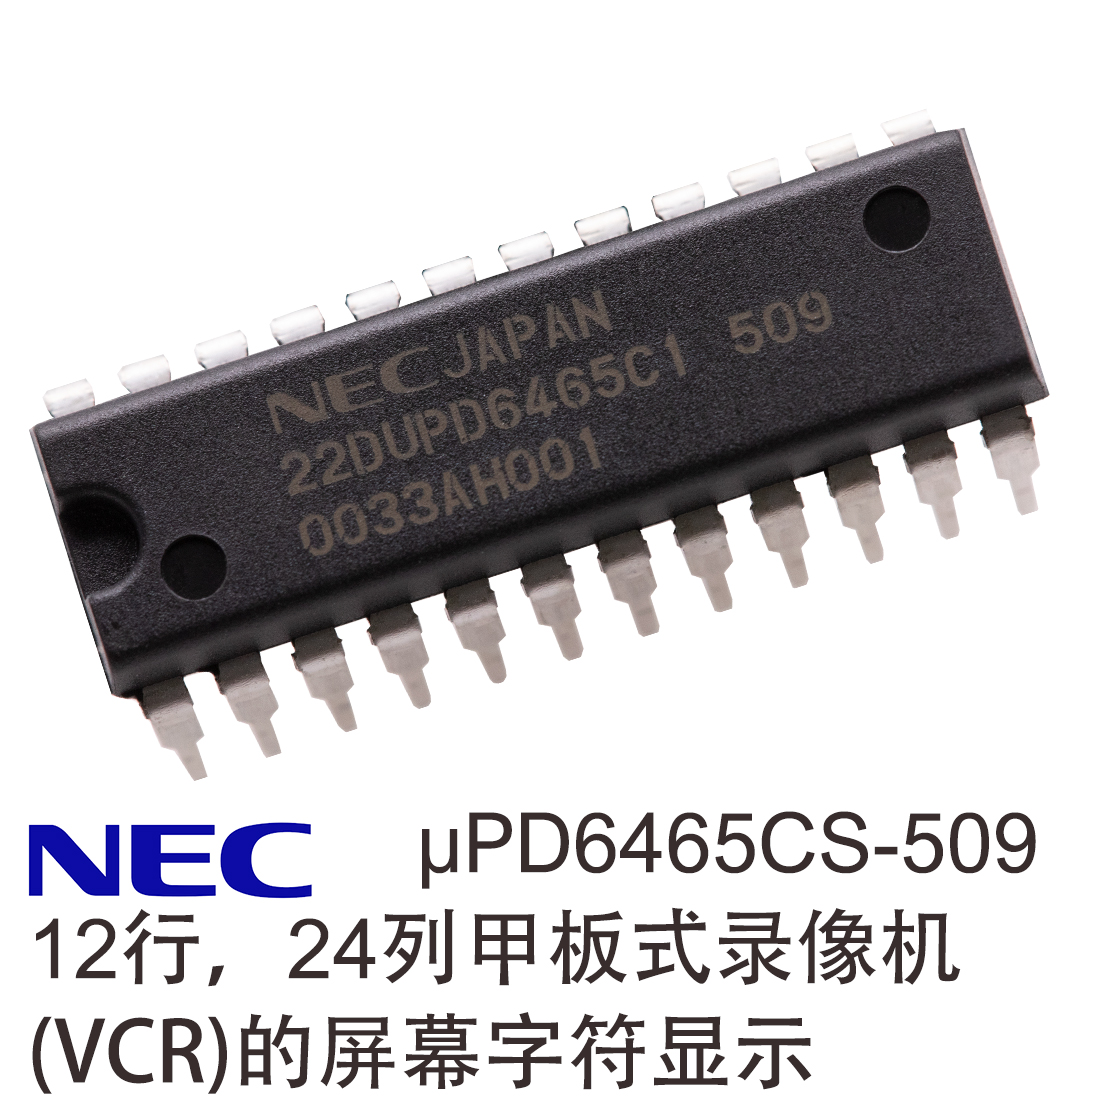 μPD6464A、μPD6465，UPD6465， 日本NEC字符编码器，12行24列甲板式录像机字符显示驱动，VCR的屏幕字符显示LSI，电子电器显示屏幕字符显示编辑器，可编程字符IC